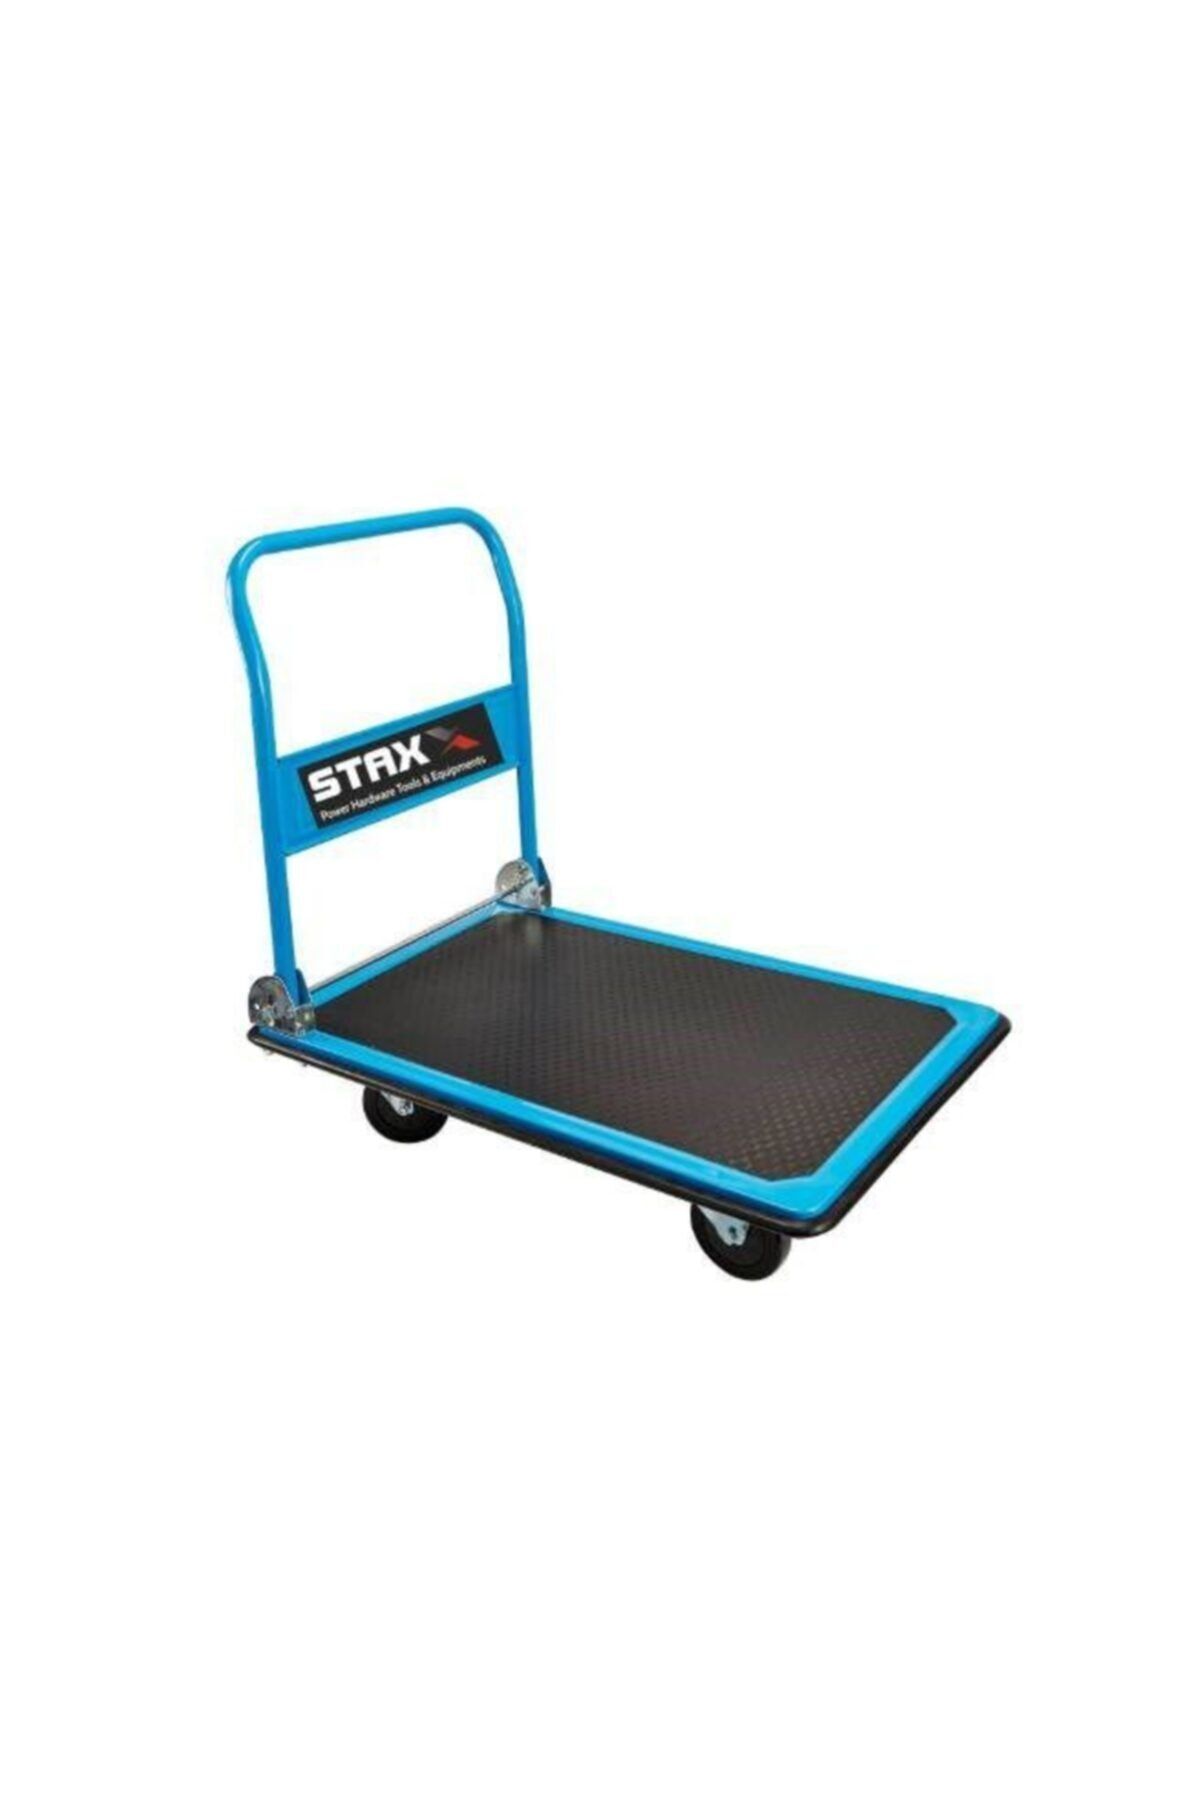 STAXX POWER Pro 300kg Koli Yük Paket Taşıma El Arabası Katlanır Tabla 300kg Yükleme Kapasitesi